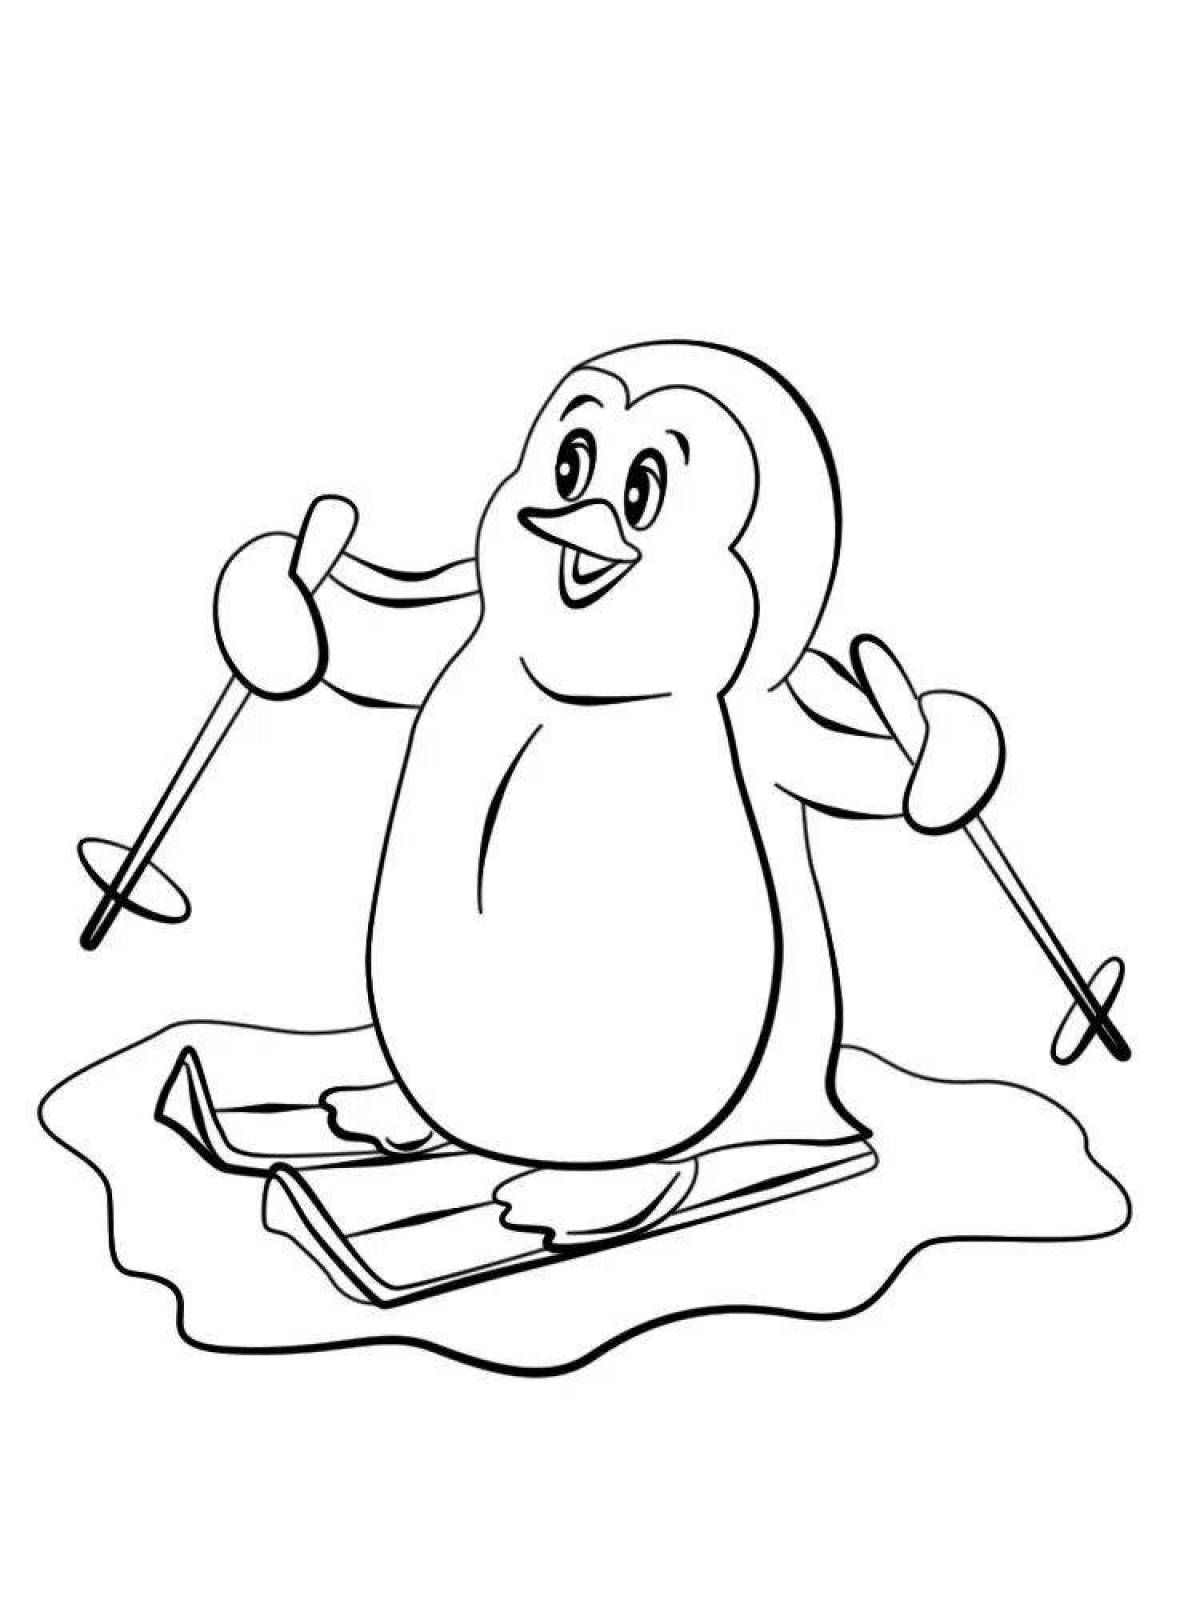 Веселая раскраска пингвинов для детей